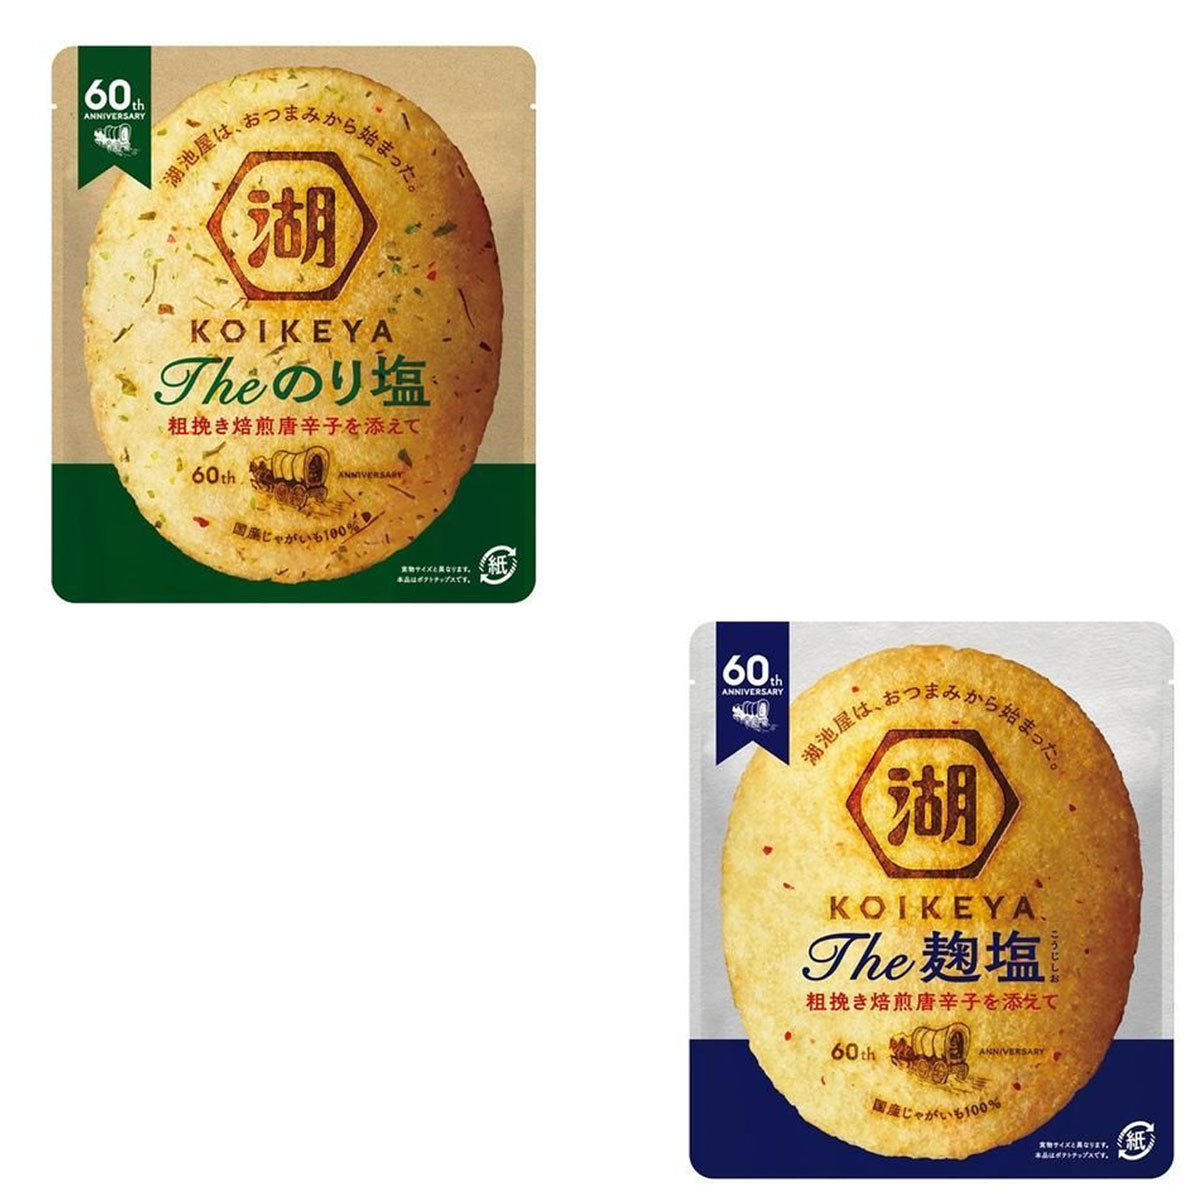 麴鹽、海苔鹽風味洋芋片 KOIKEYA 56g 日本進口製造